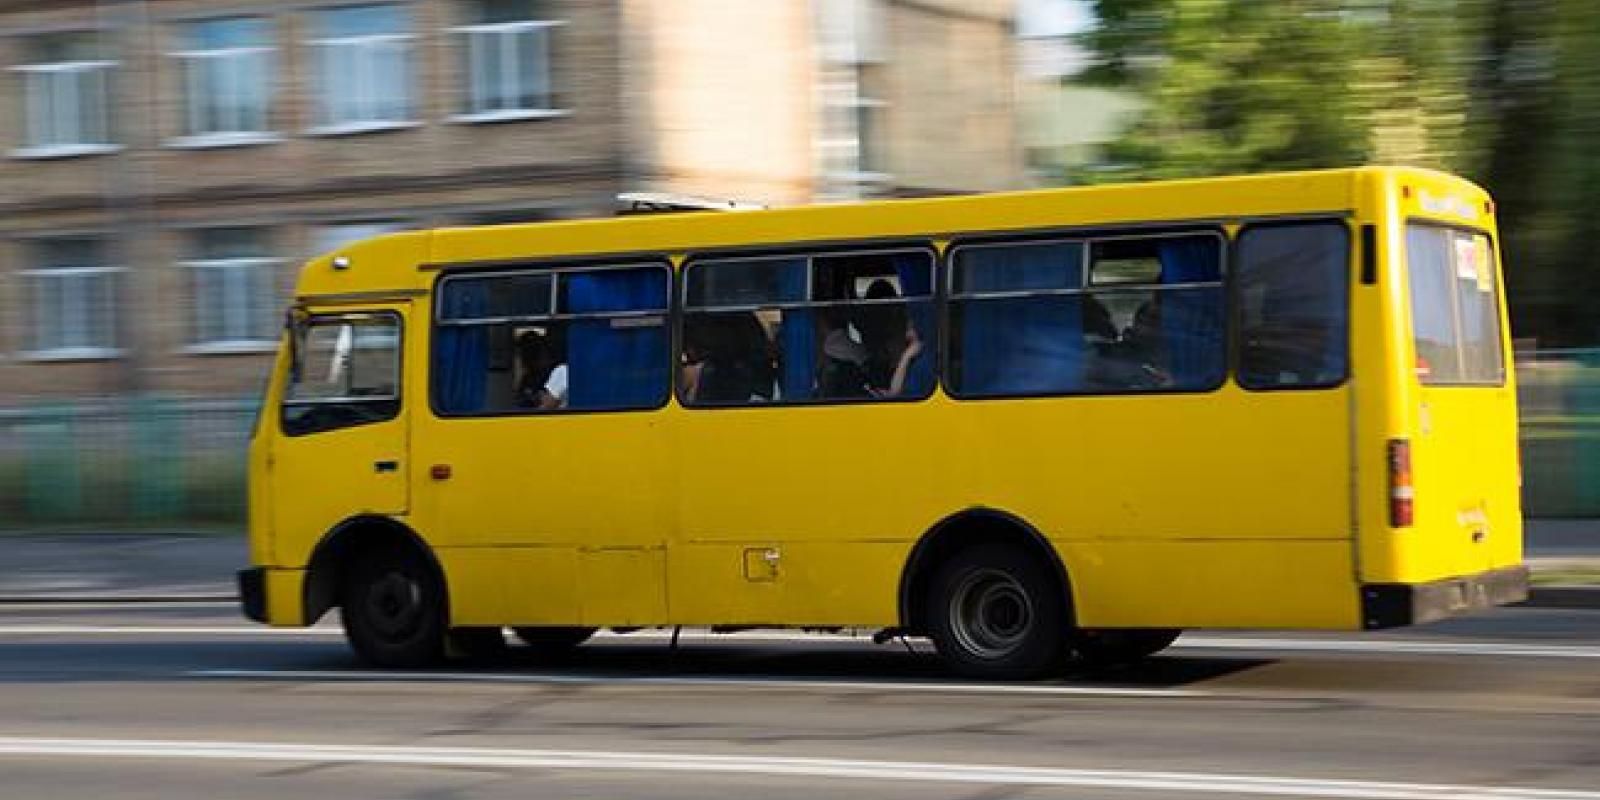  В Киеве водитель выбросил пенсионерку из маршрутки: видео